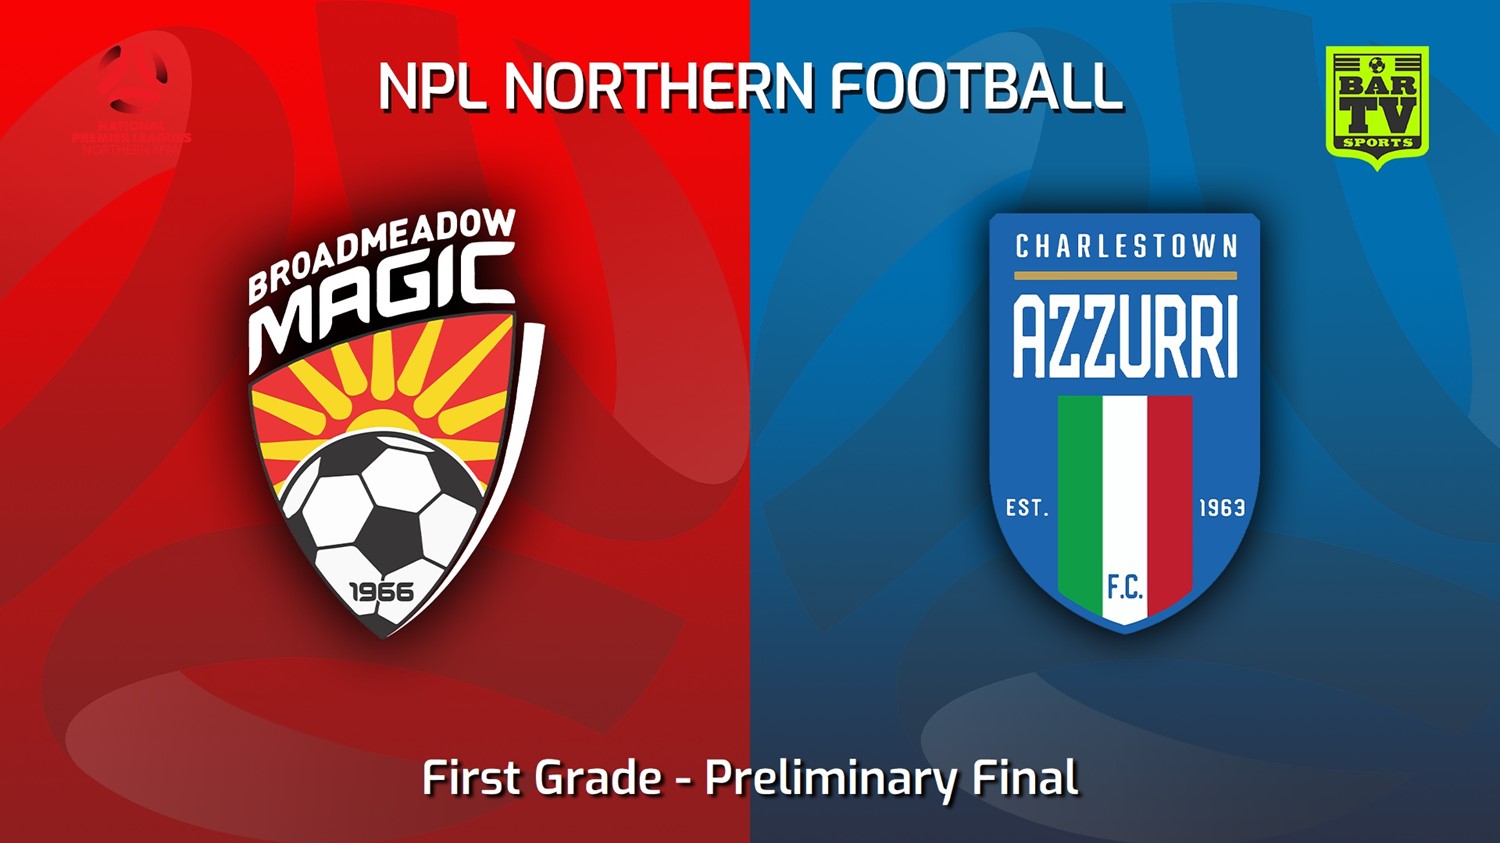 230903-NNSW NPLM Preliminary Final - Broadmeadow Magic v Charlestown Azzurri FC Minigame Slate Image